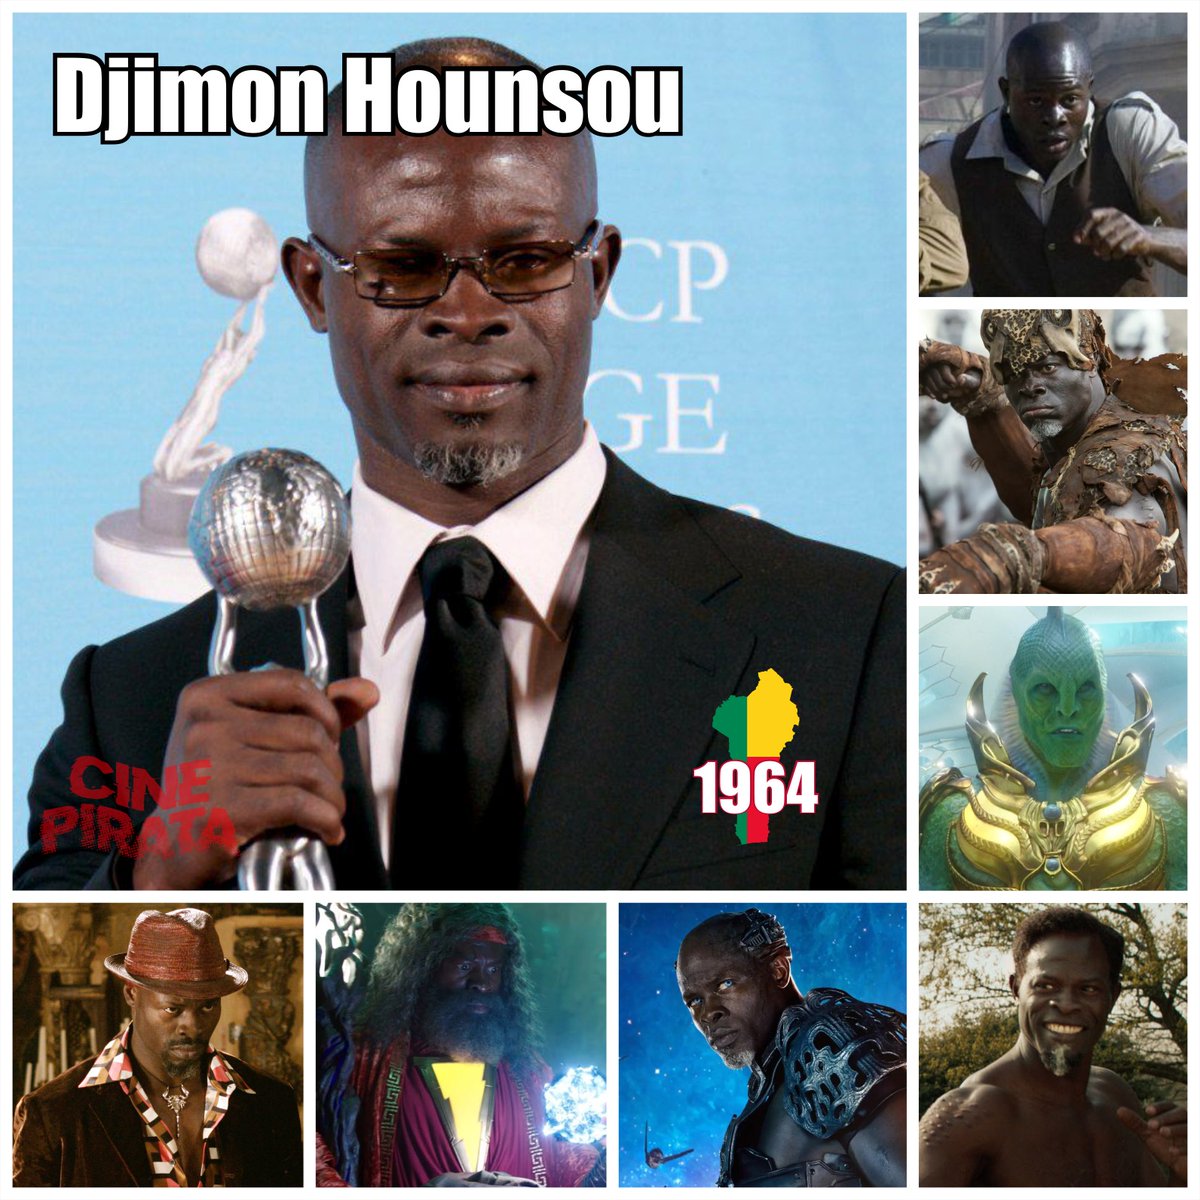 ¡ FELIZ CUMPLEAÑOS !
Djimon Hounsou 🥳🎂

+Cine -Pirata
#Cine #UnDiaComoHoy #CinePirata #DjimonHounsou #Cine2024